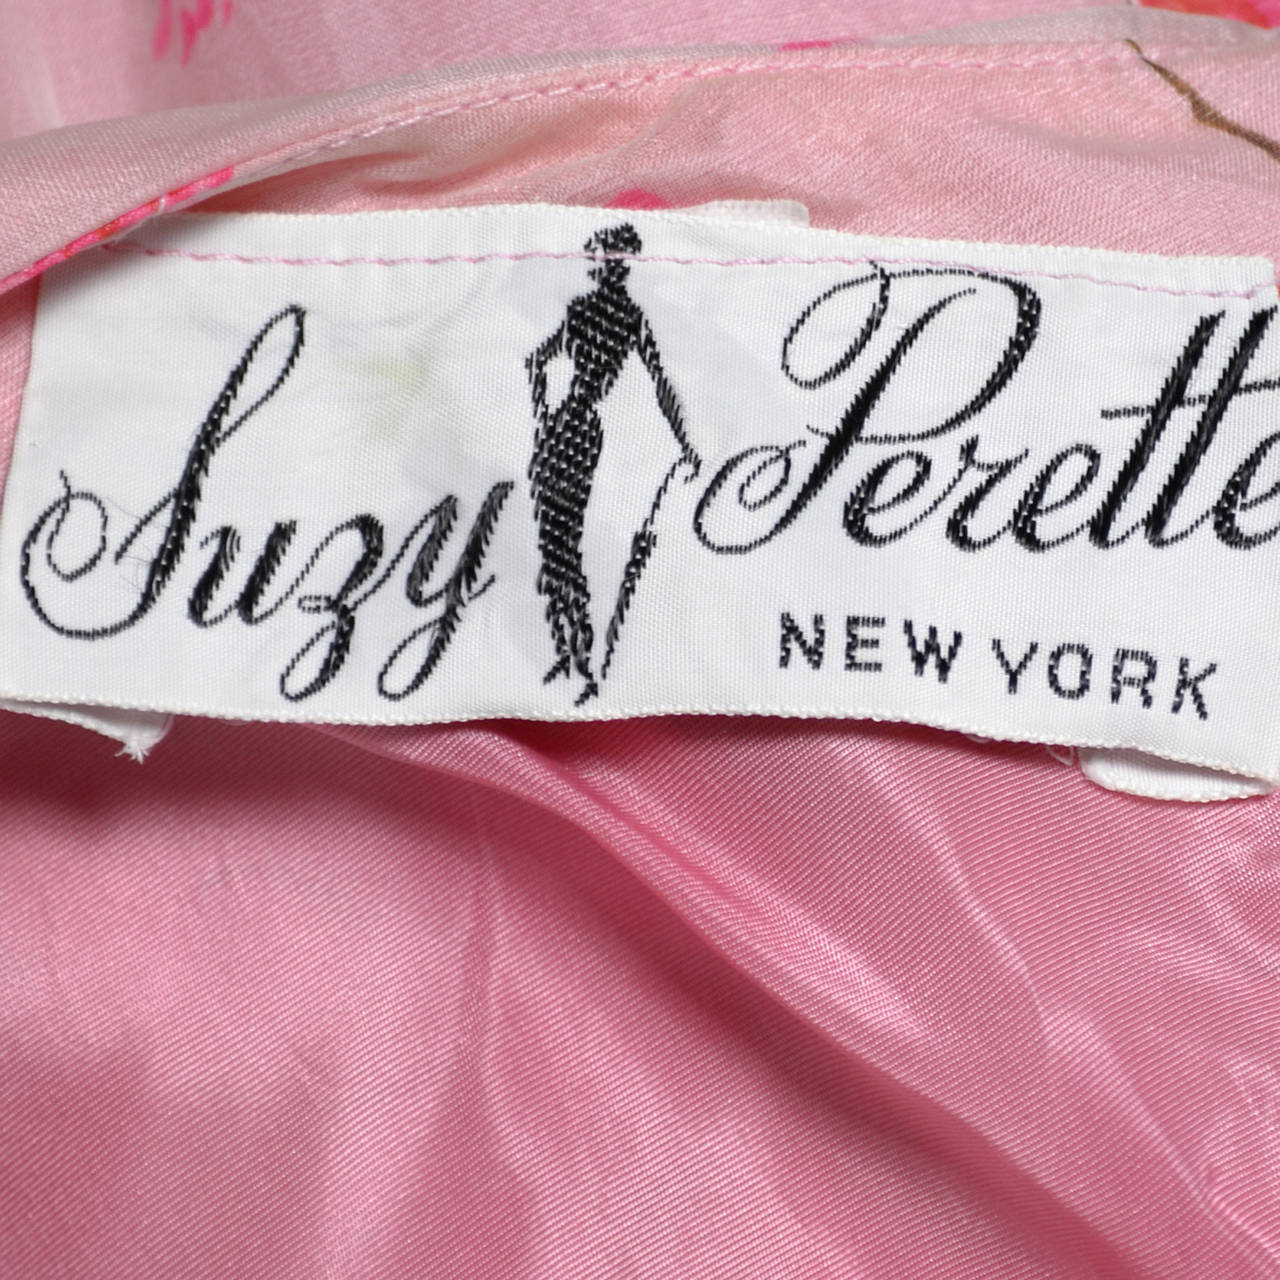 Women's 1950s Suzy Perette Vintage Dress Bubble Hem Pink Floral Organza Bow Party Frock